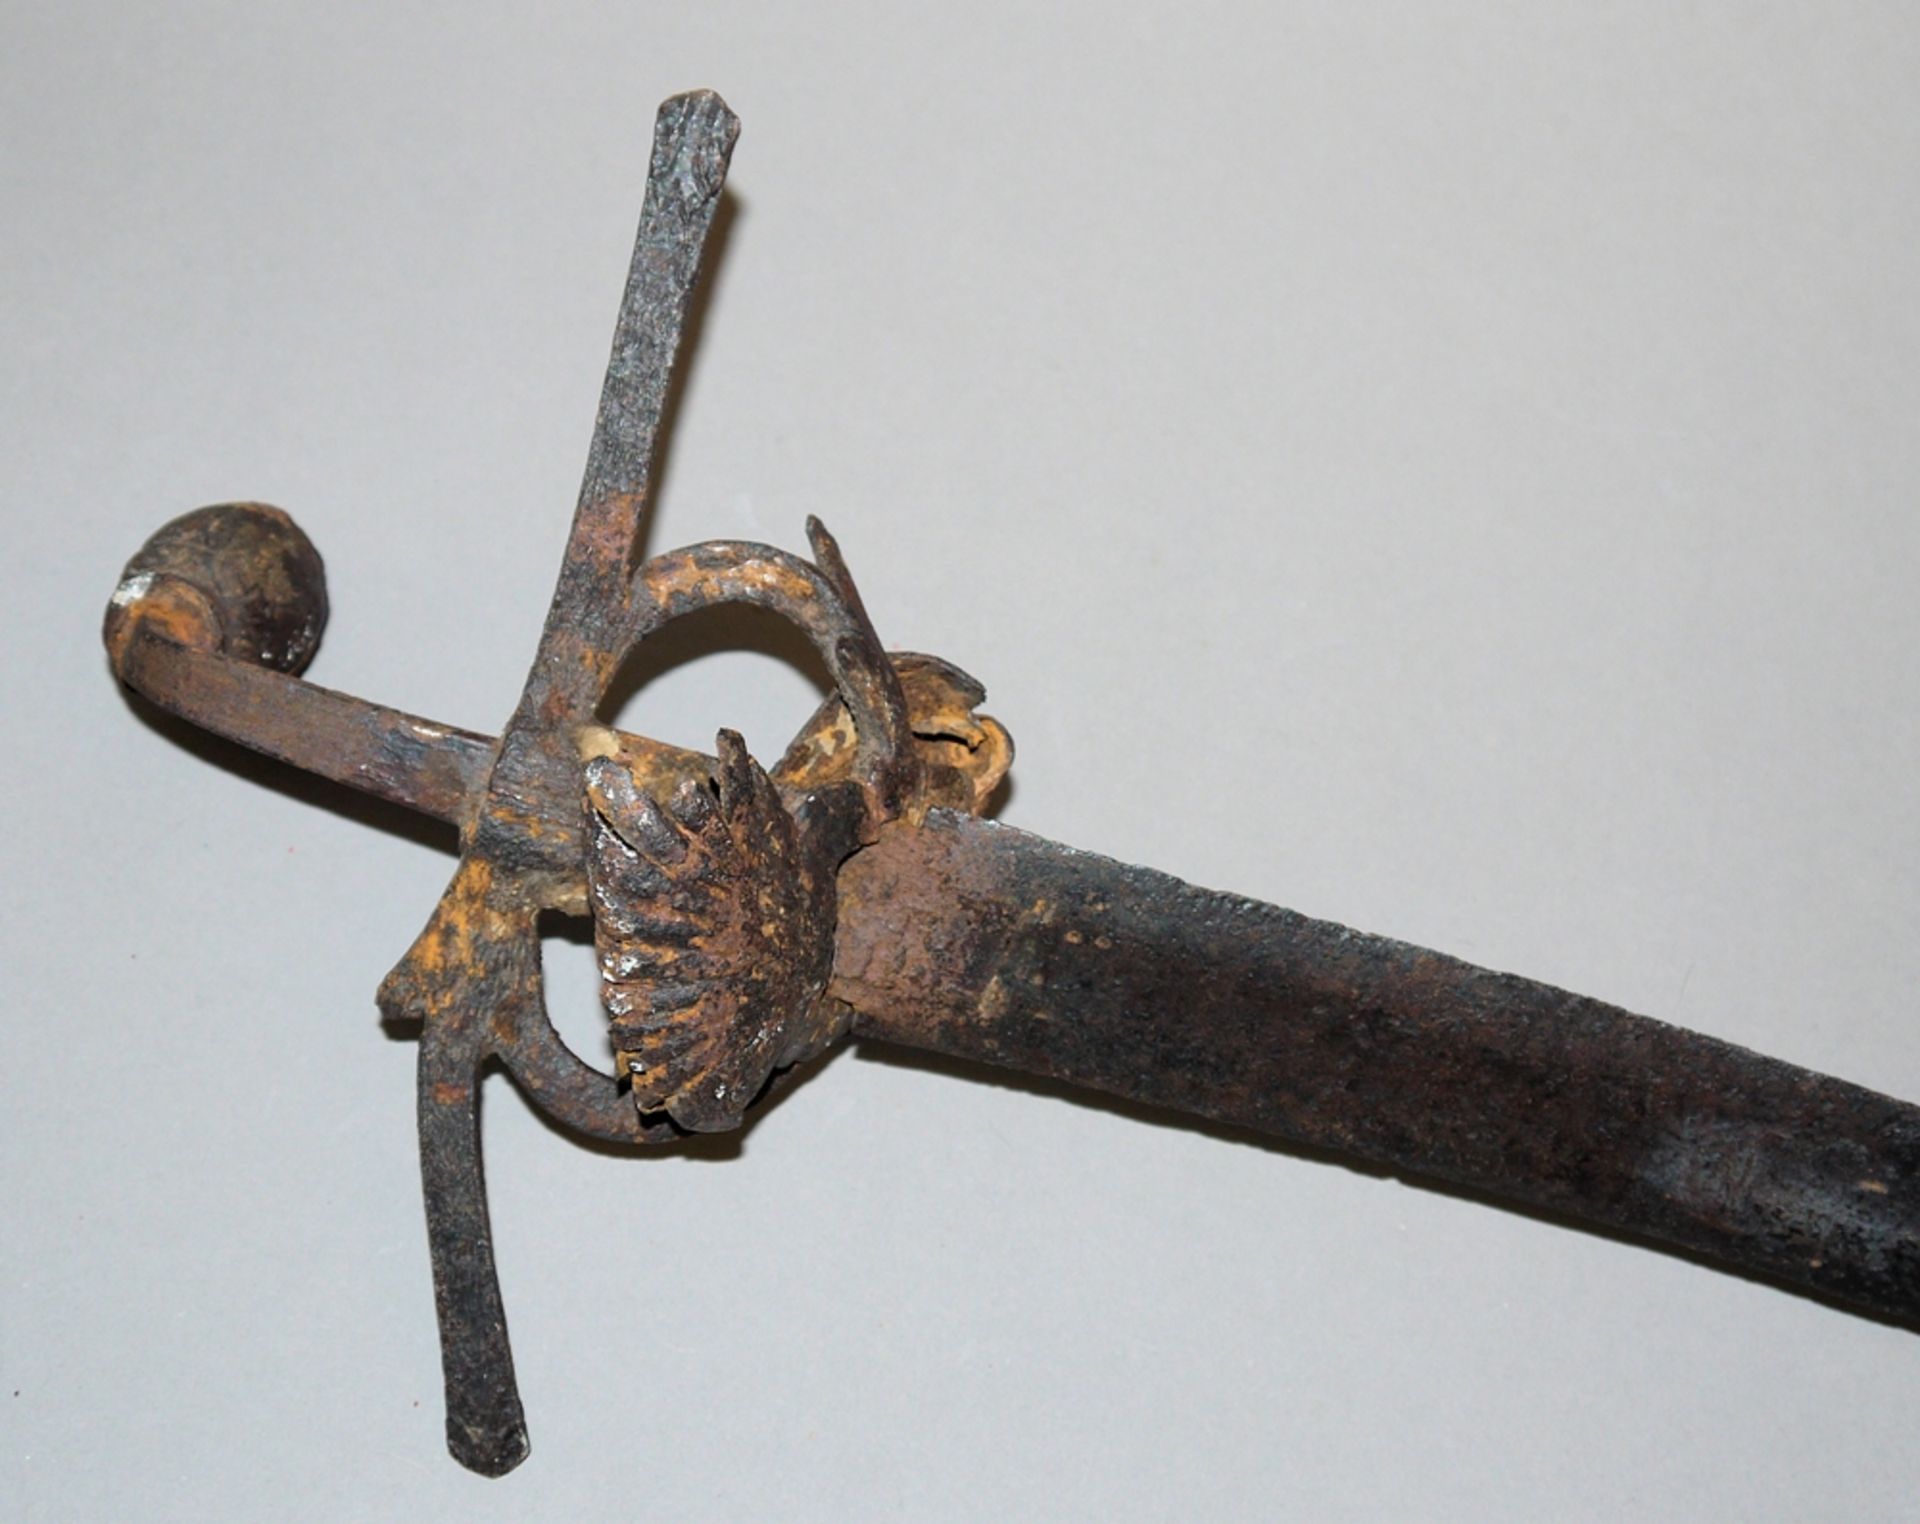 Schwert des Waffenschmiedes Heinrich Coll um 1600 - Image 3 of 3